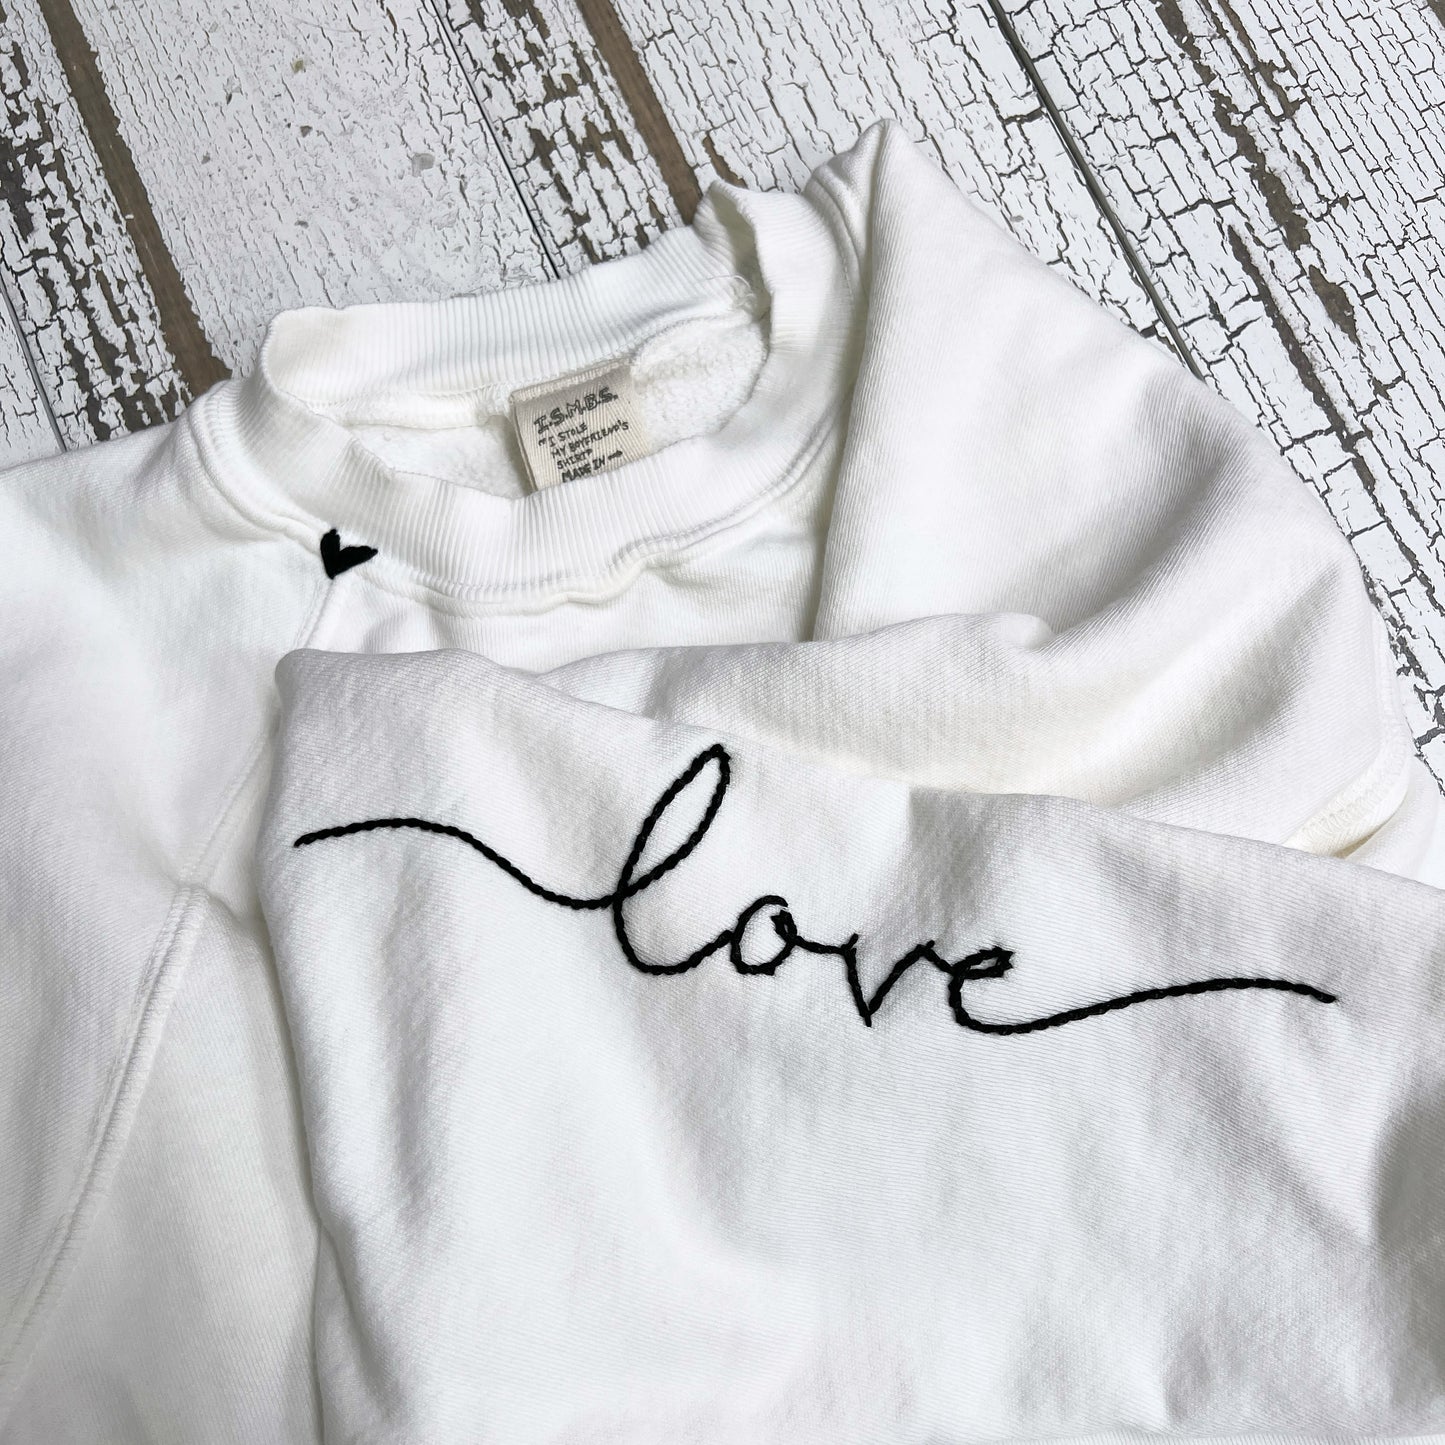 Love on sleeve Sweatshirts (12Colors)